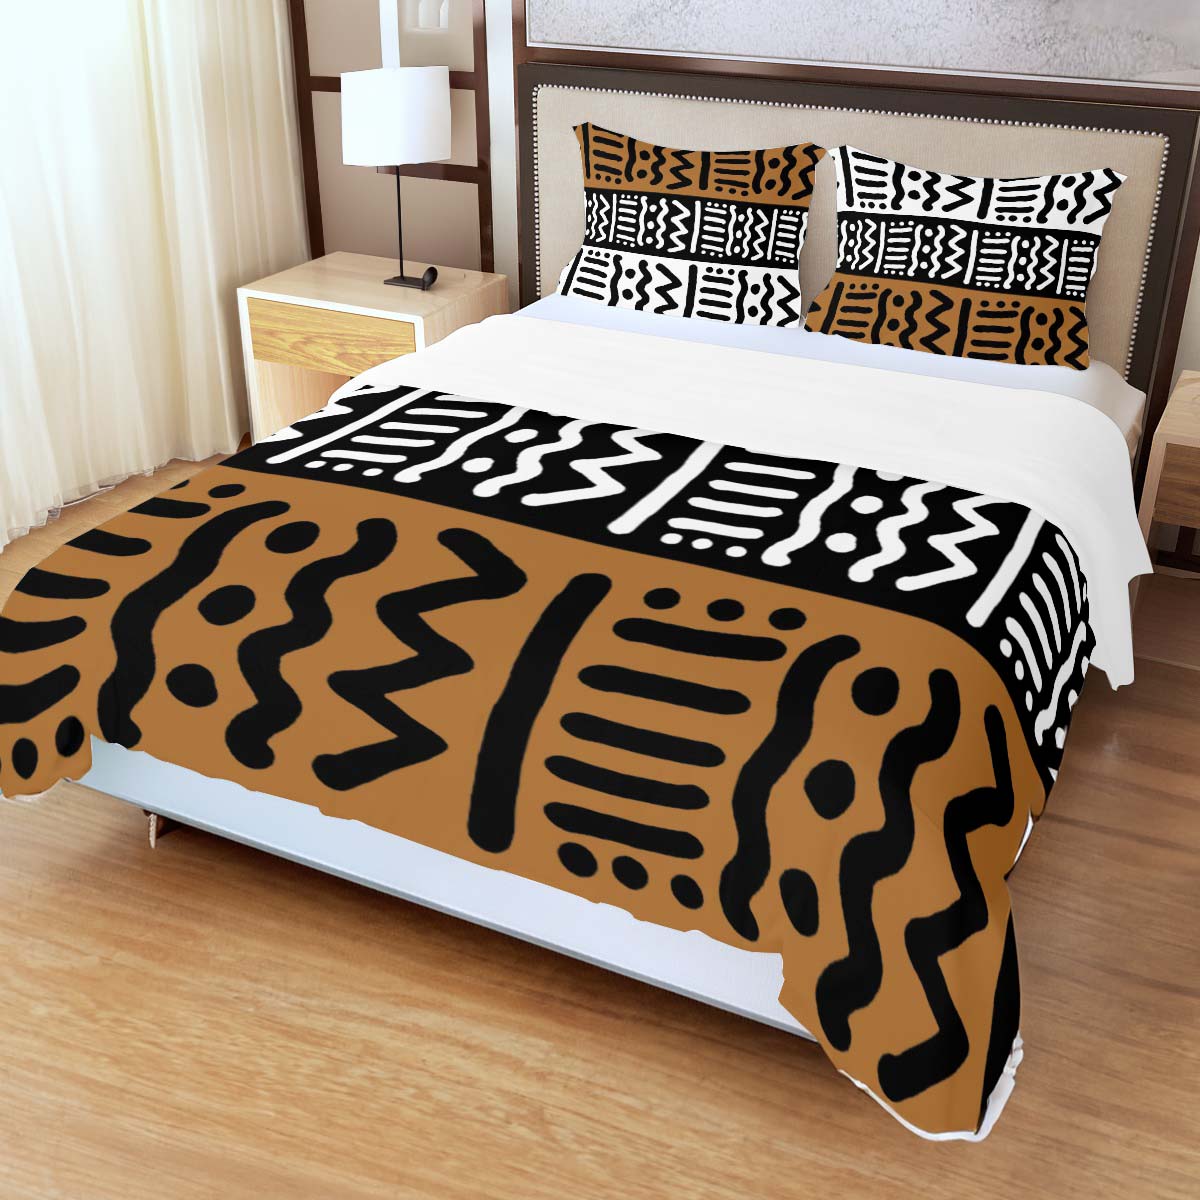 Kuba Print African Bedding Set - 3 Piece Duvet &Pillow Case